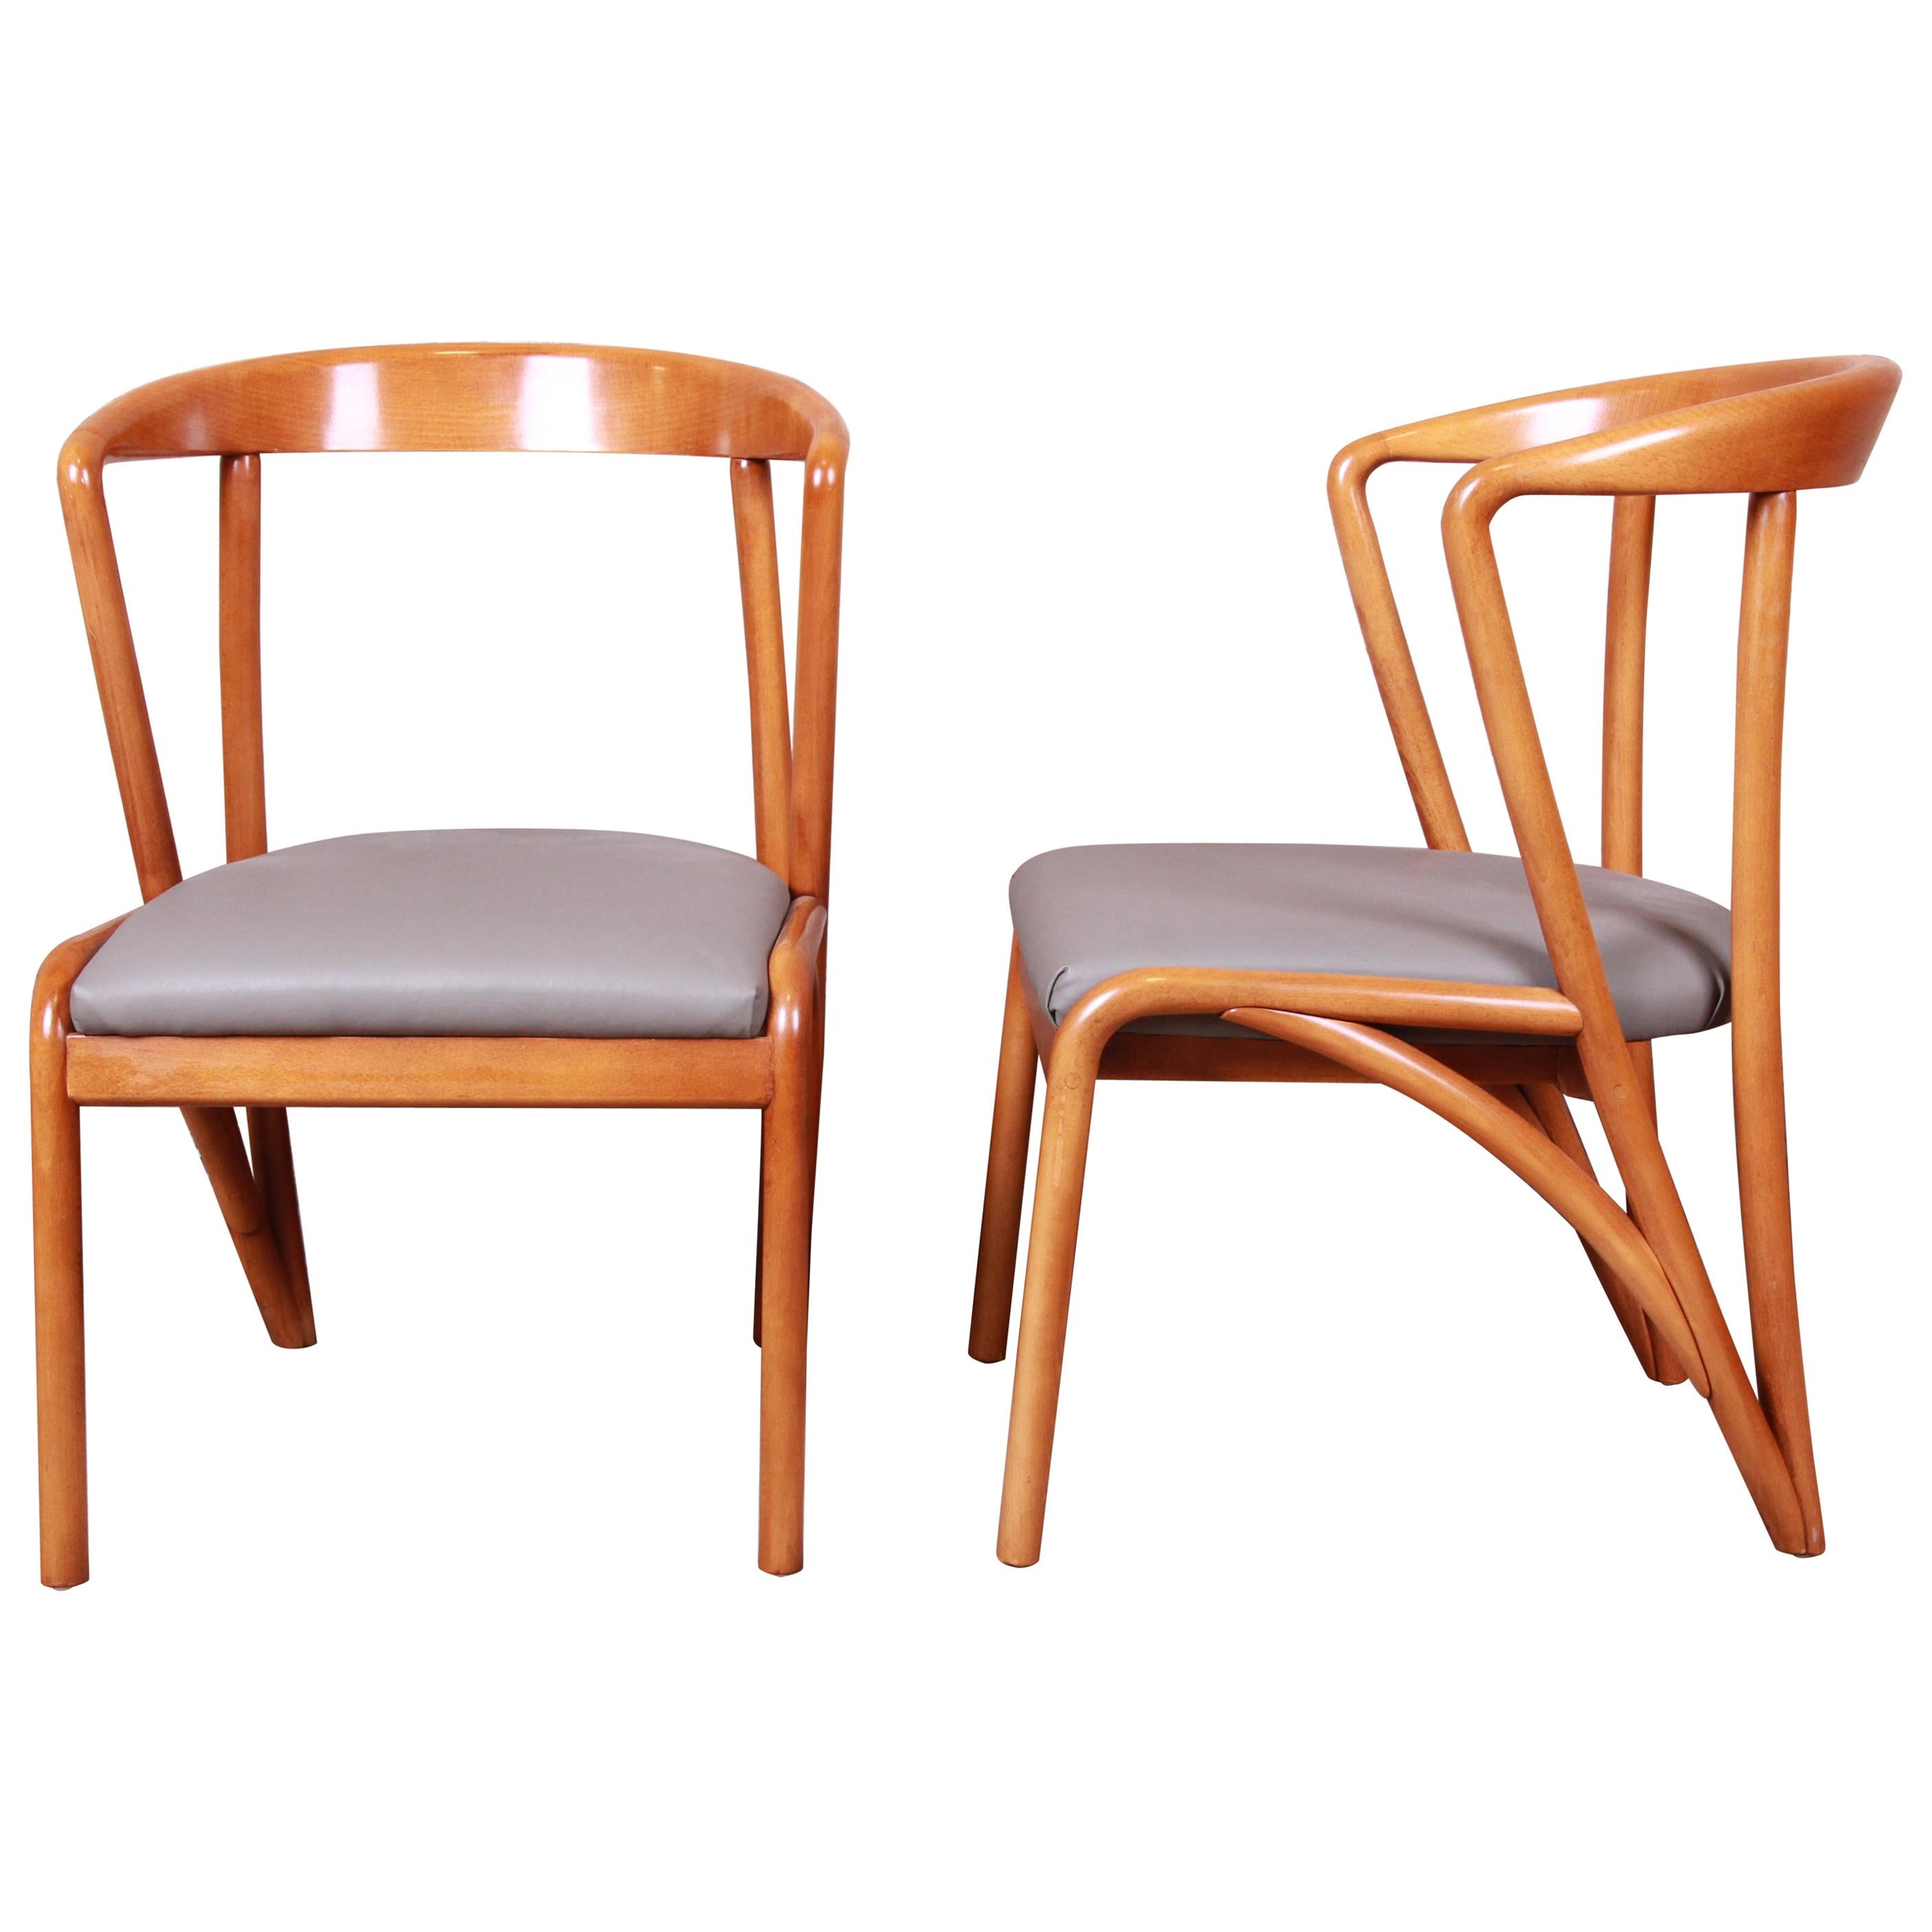 Paire de fauteuils en érable massif sculpté de style mi-siècle moderne, Baker Furniture